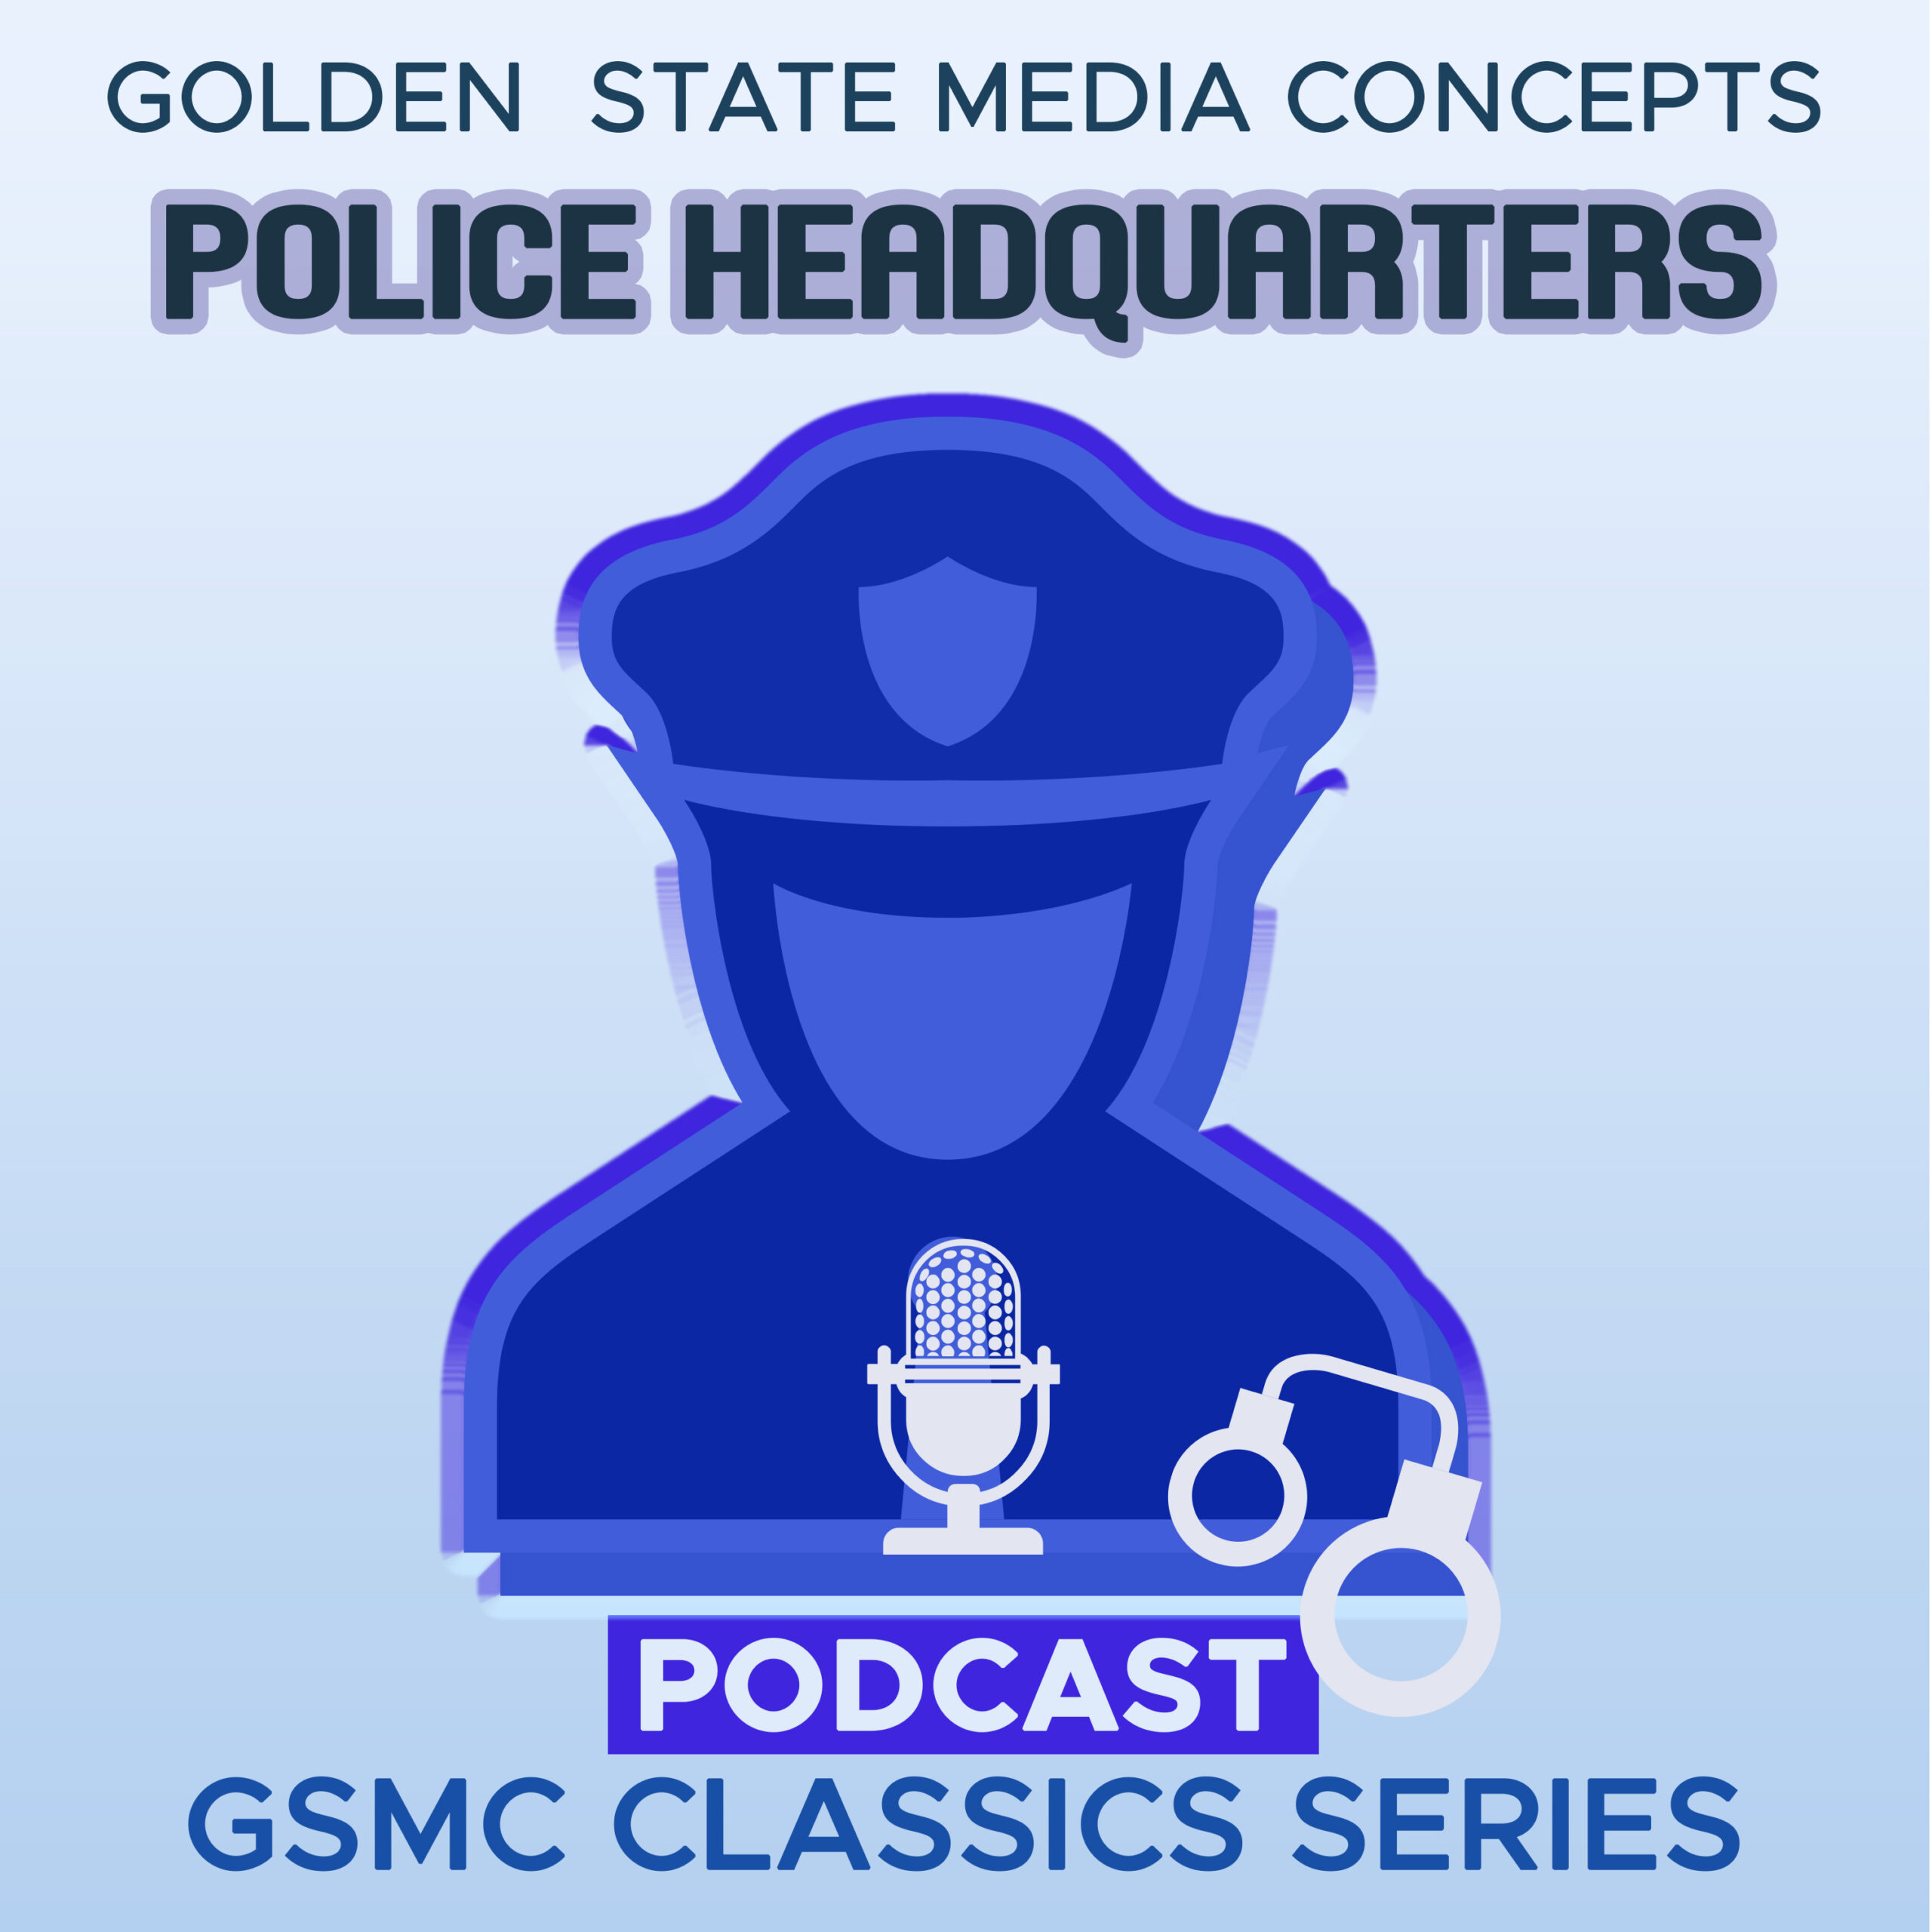 GSMC Classics: Police Headquarters